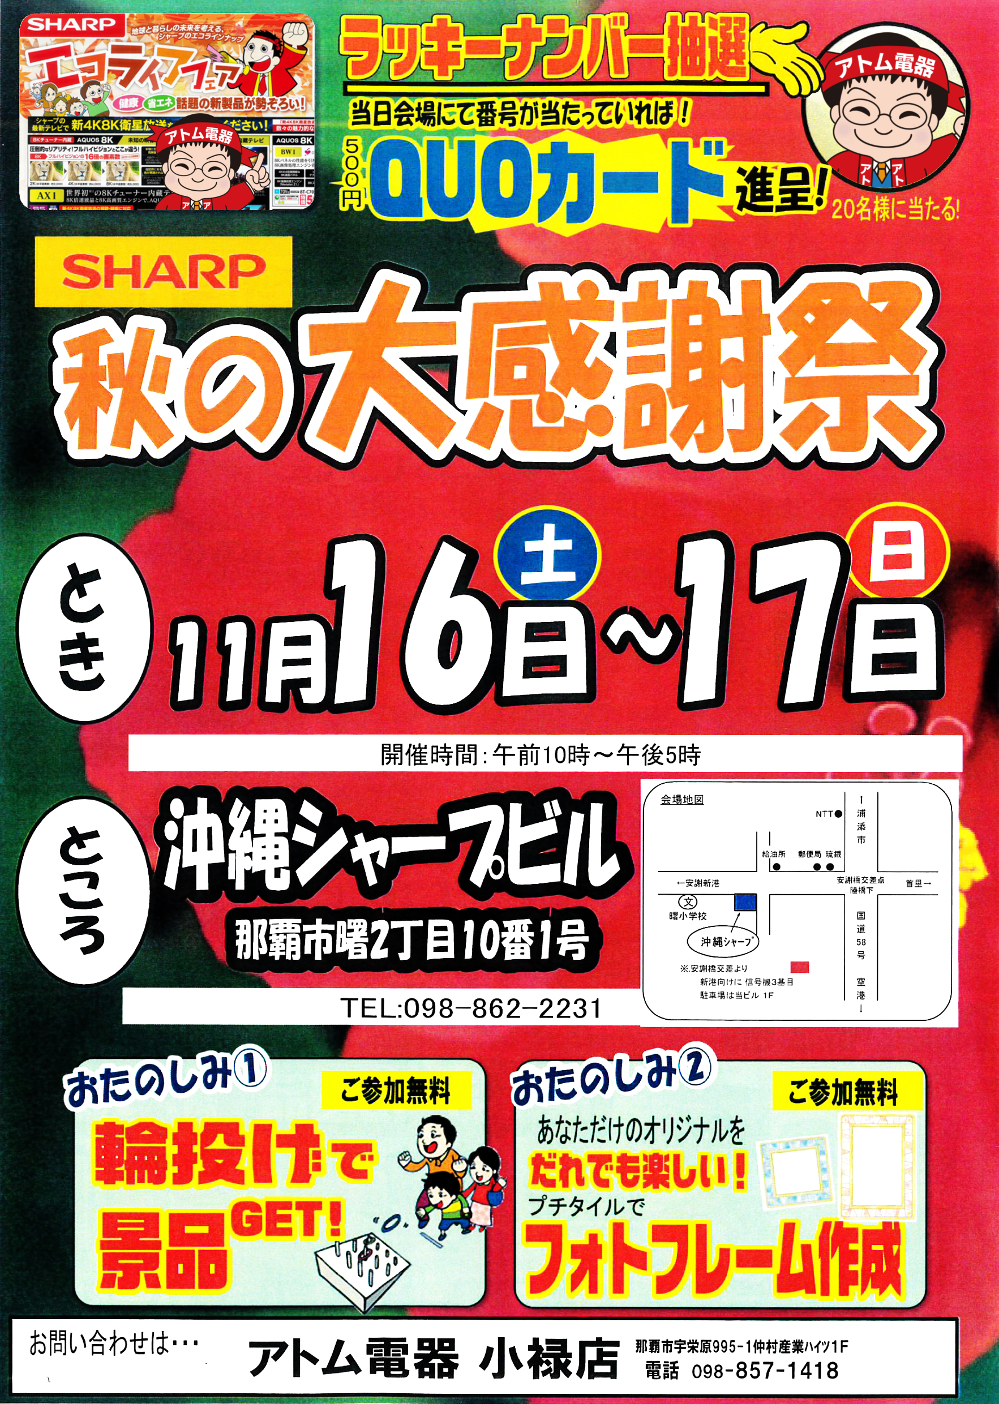 シャープ(SHARP)・秋の大感謝祭 － 2019年11月16日(土)～11月17日(日) 沖縄シャープビル会場にて。